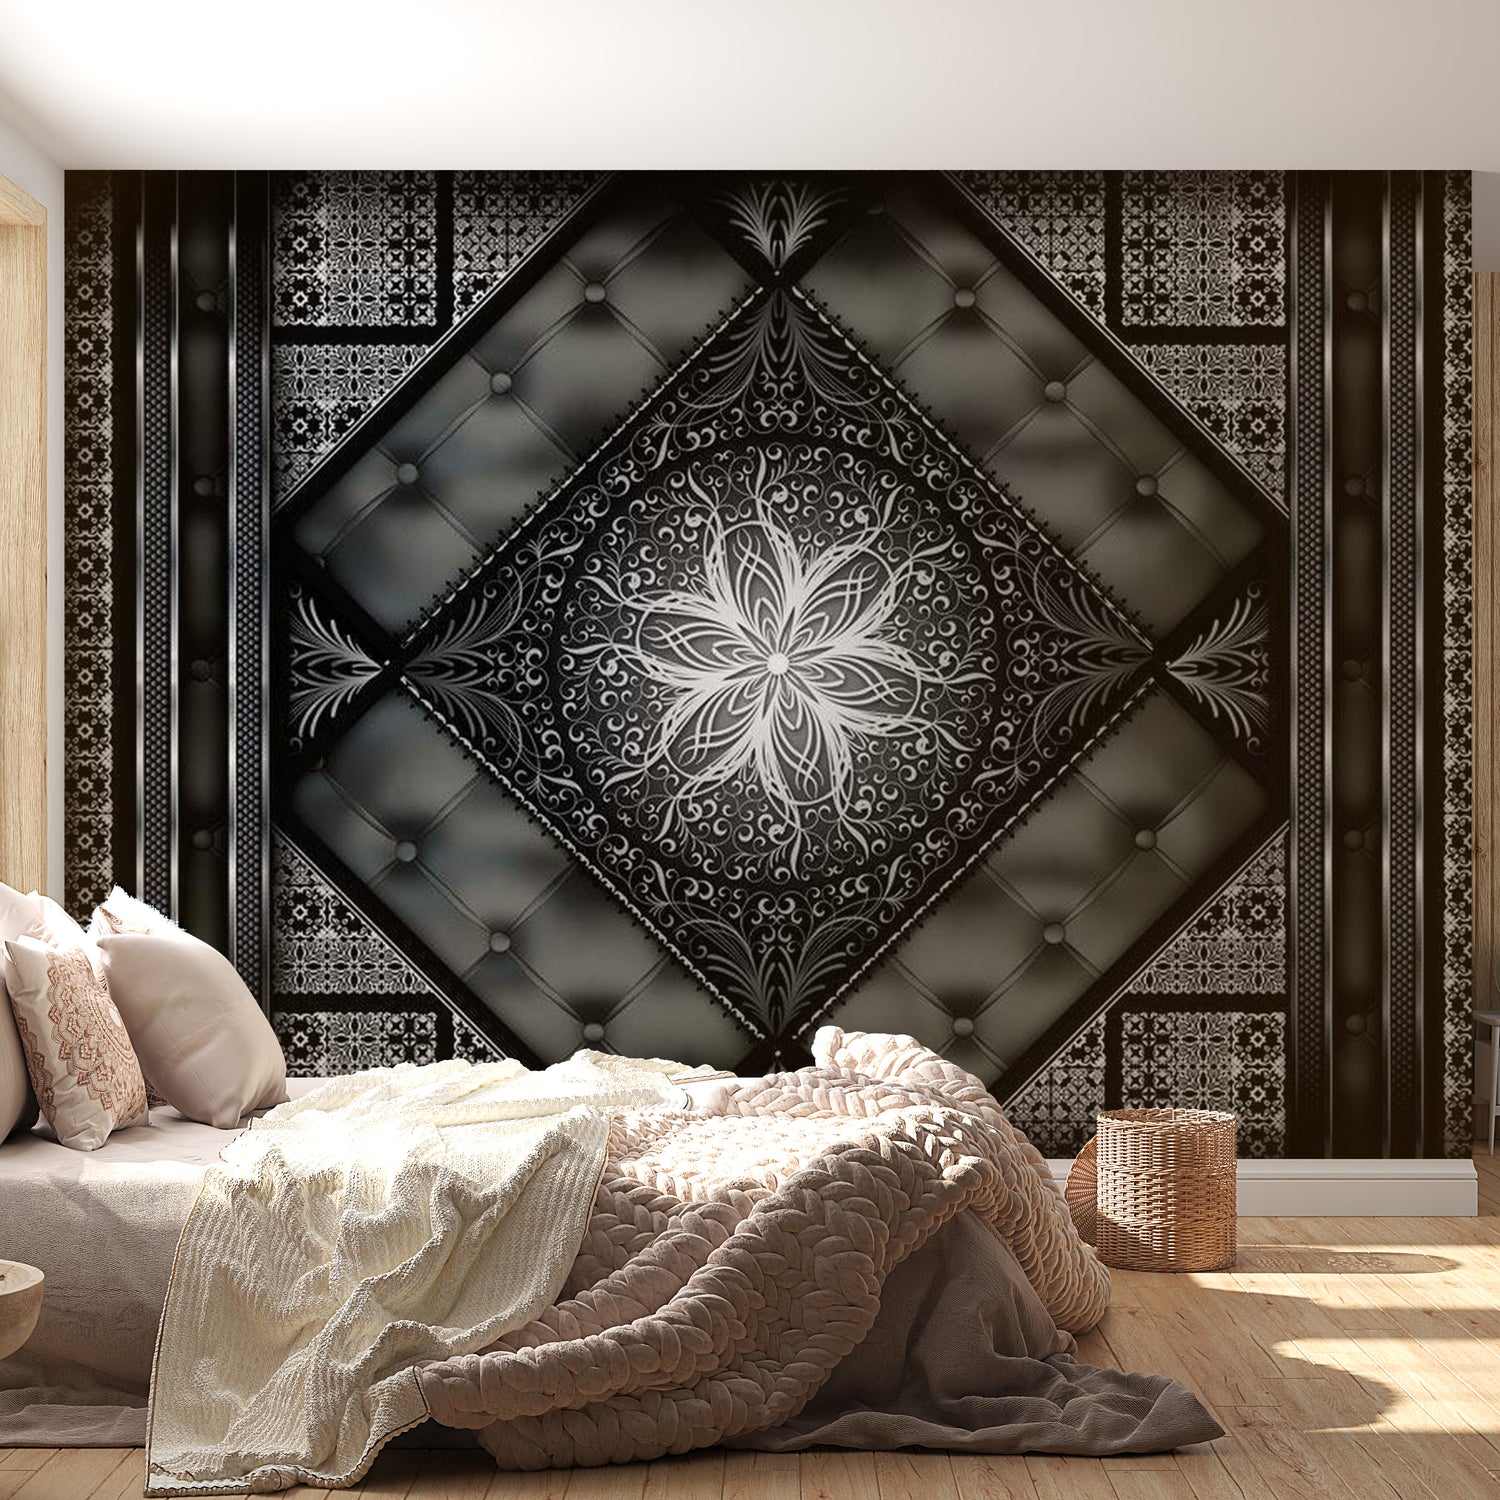 Mandala Wallpaper Wall Mural - Black Mosaic